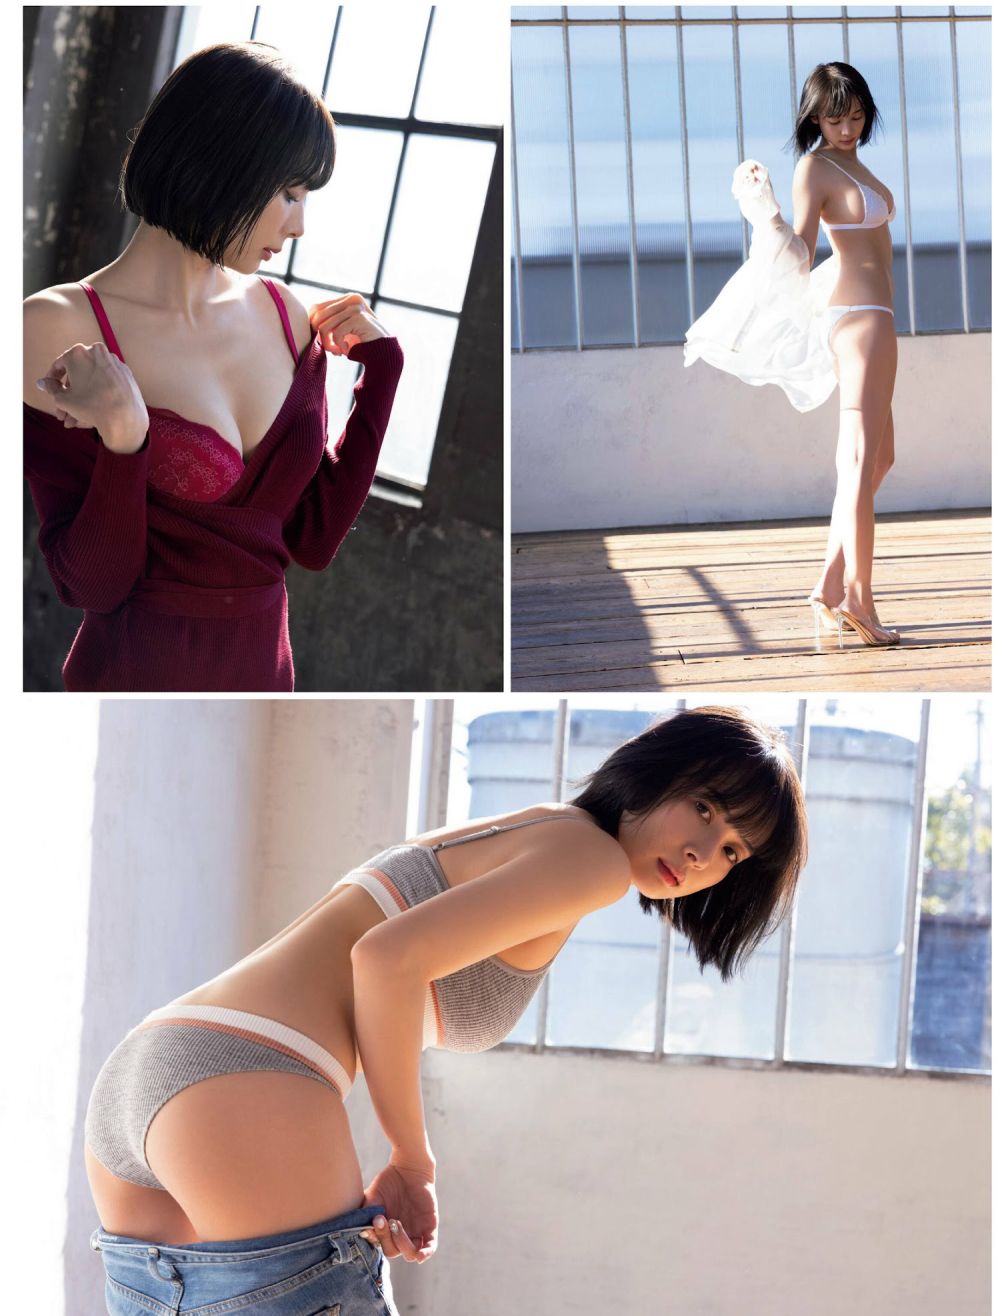 冈田纱佳 Sexy and Hottest Photos , Latest Pics